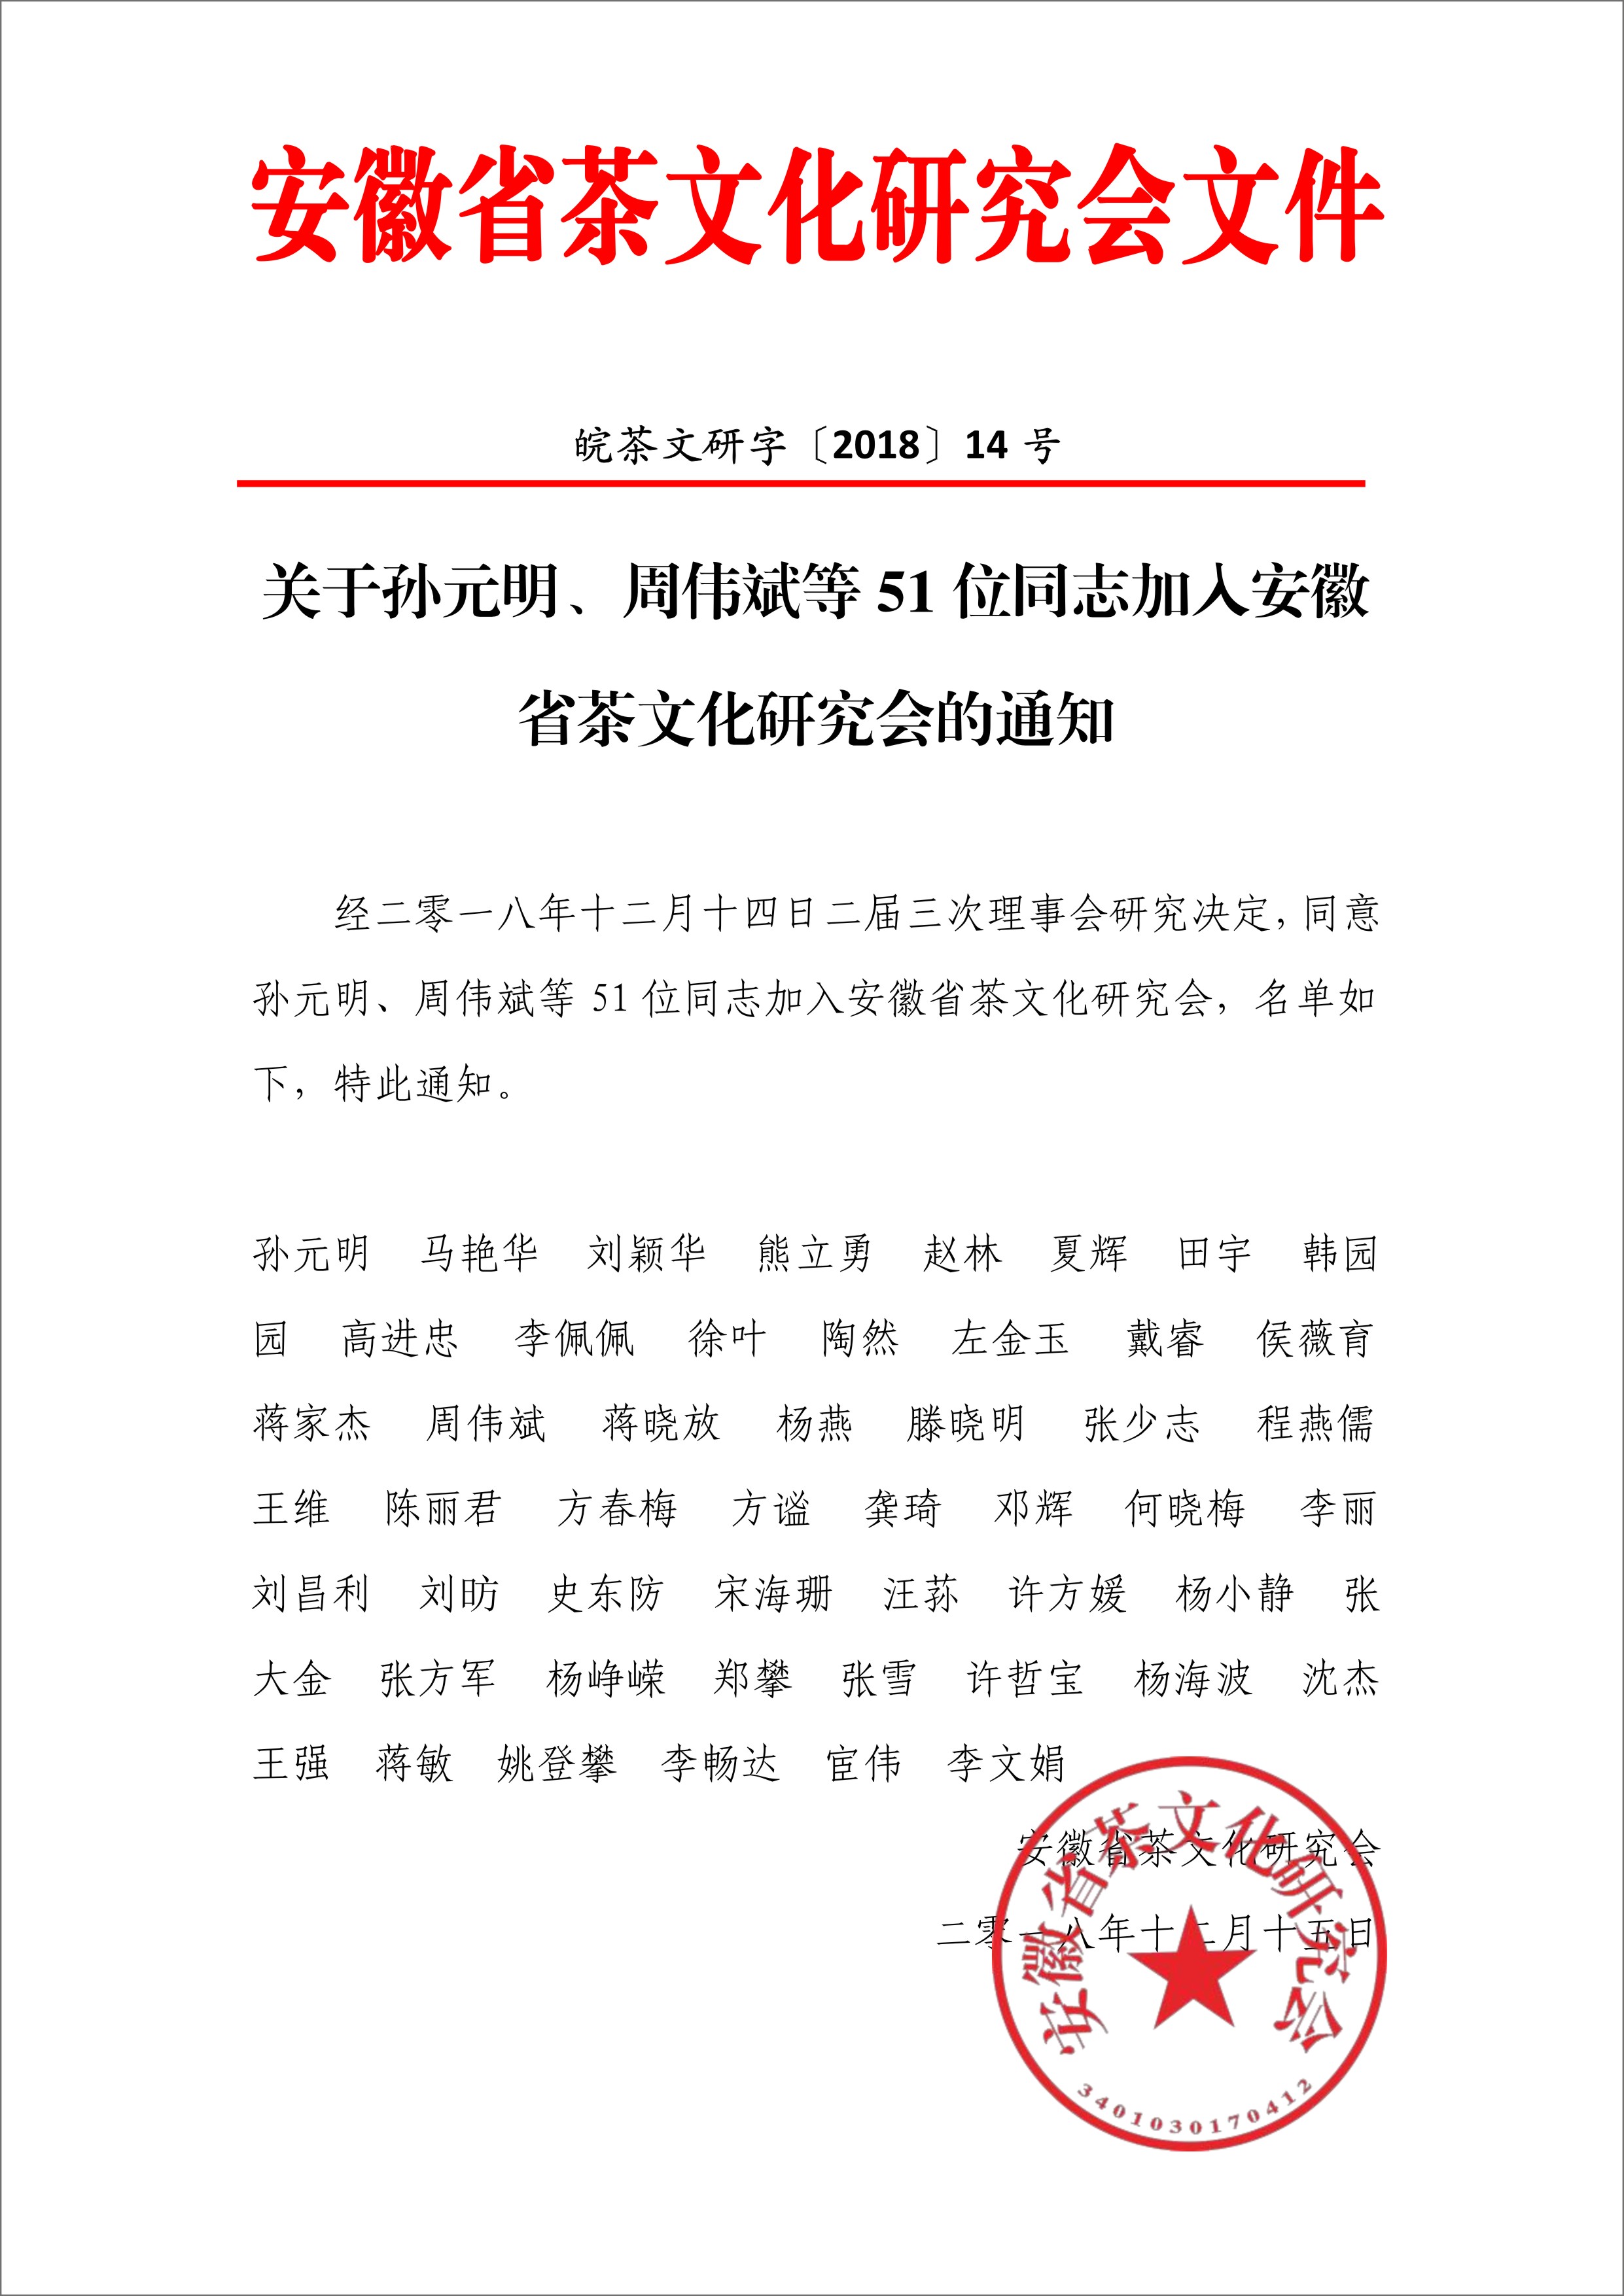 关于孙元明、周伟斌等51位同志加入安徽省茶文化研究会的通知